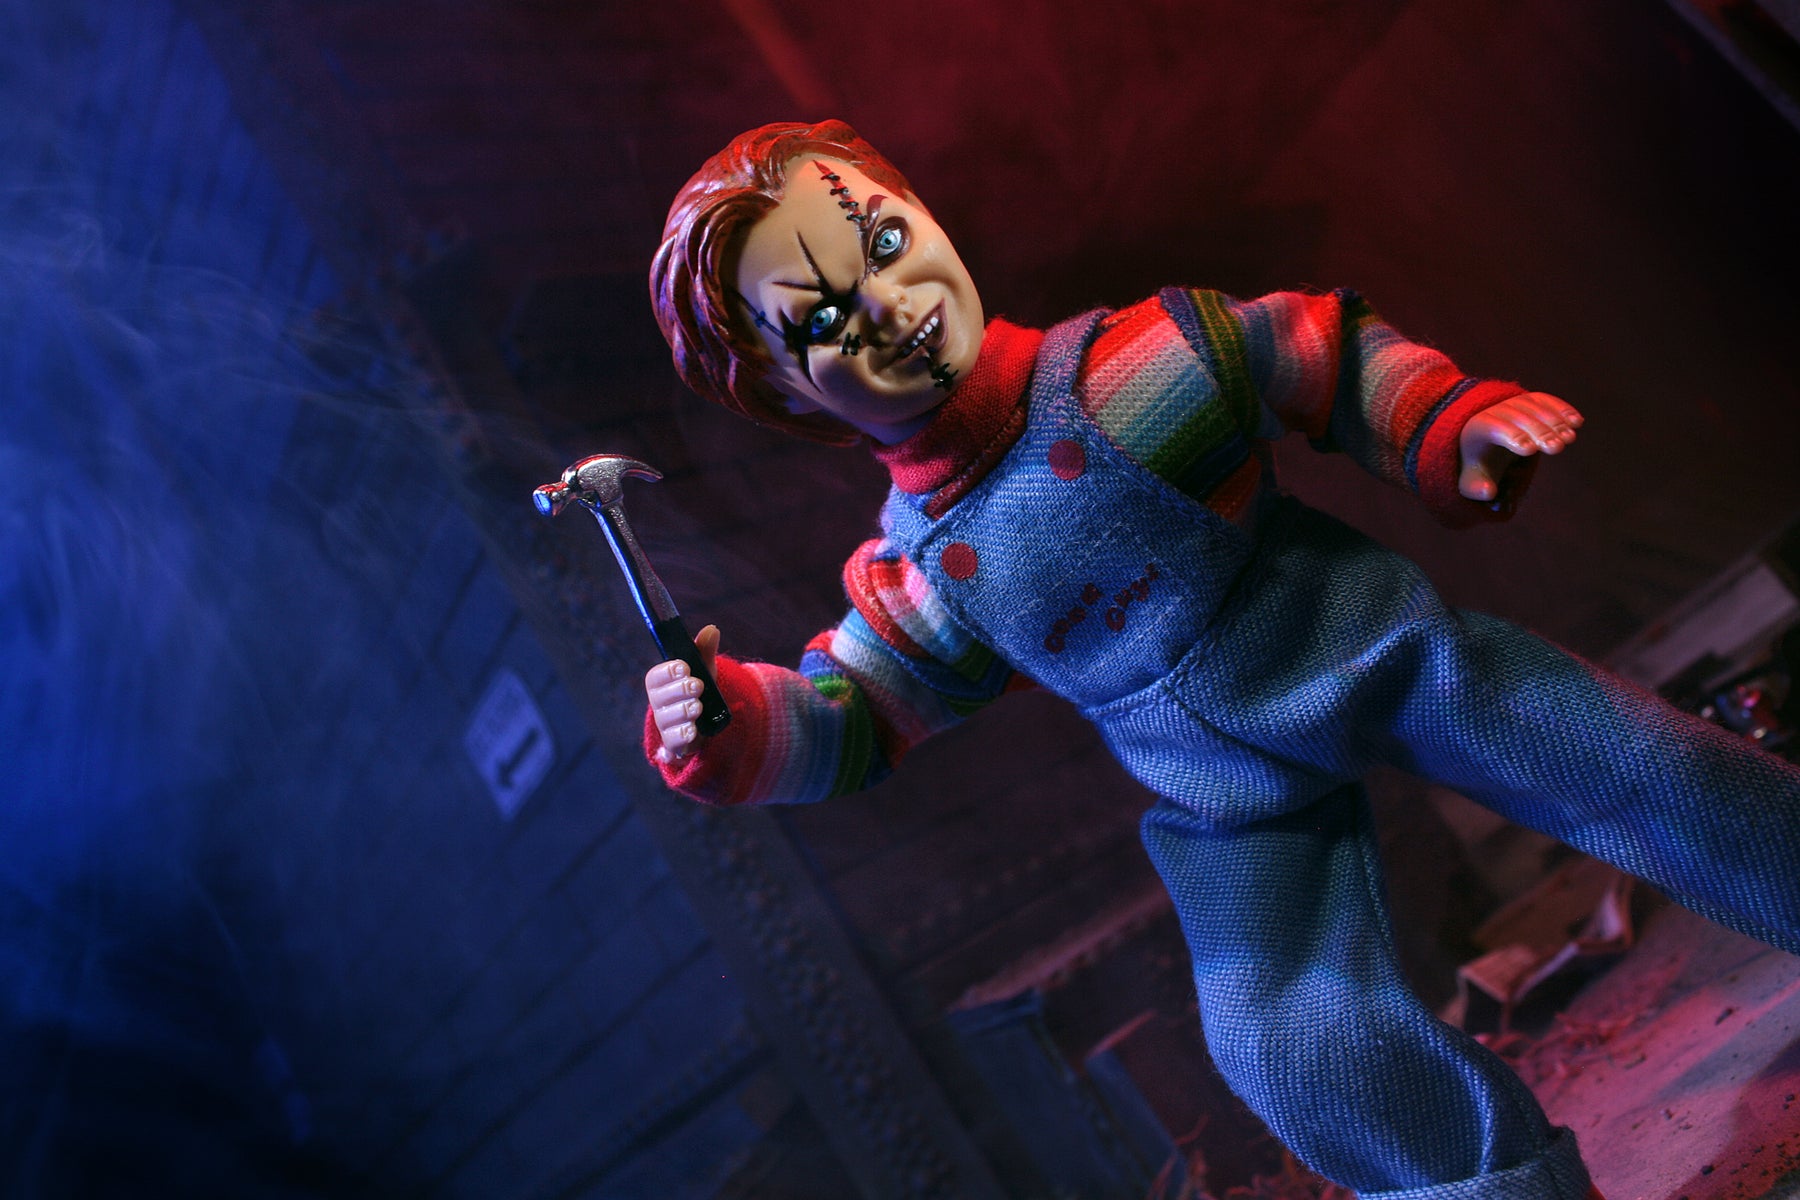 Mego Horror Wave 9 - Chucky 8" Action Figure - Zlc Collectibles